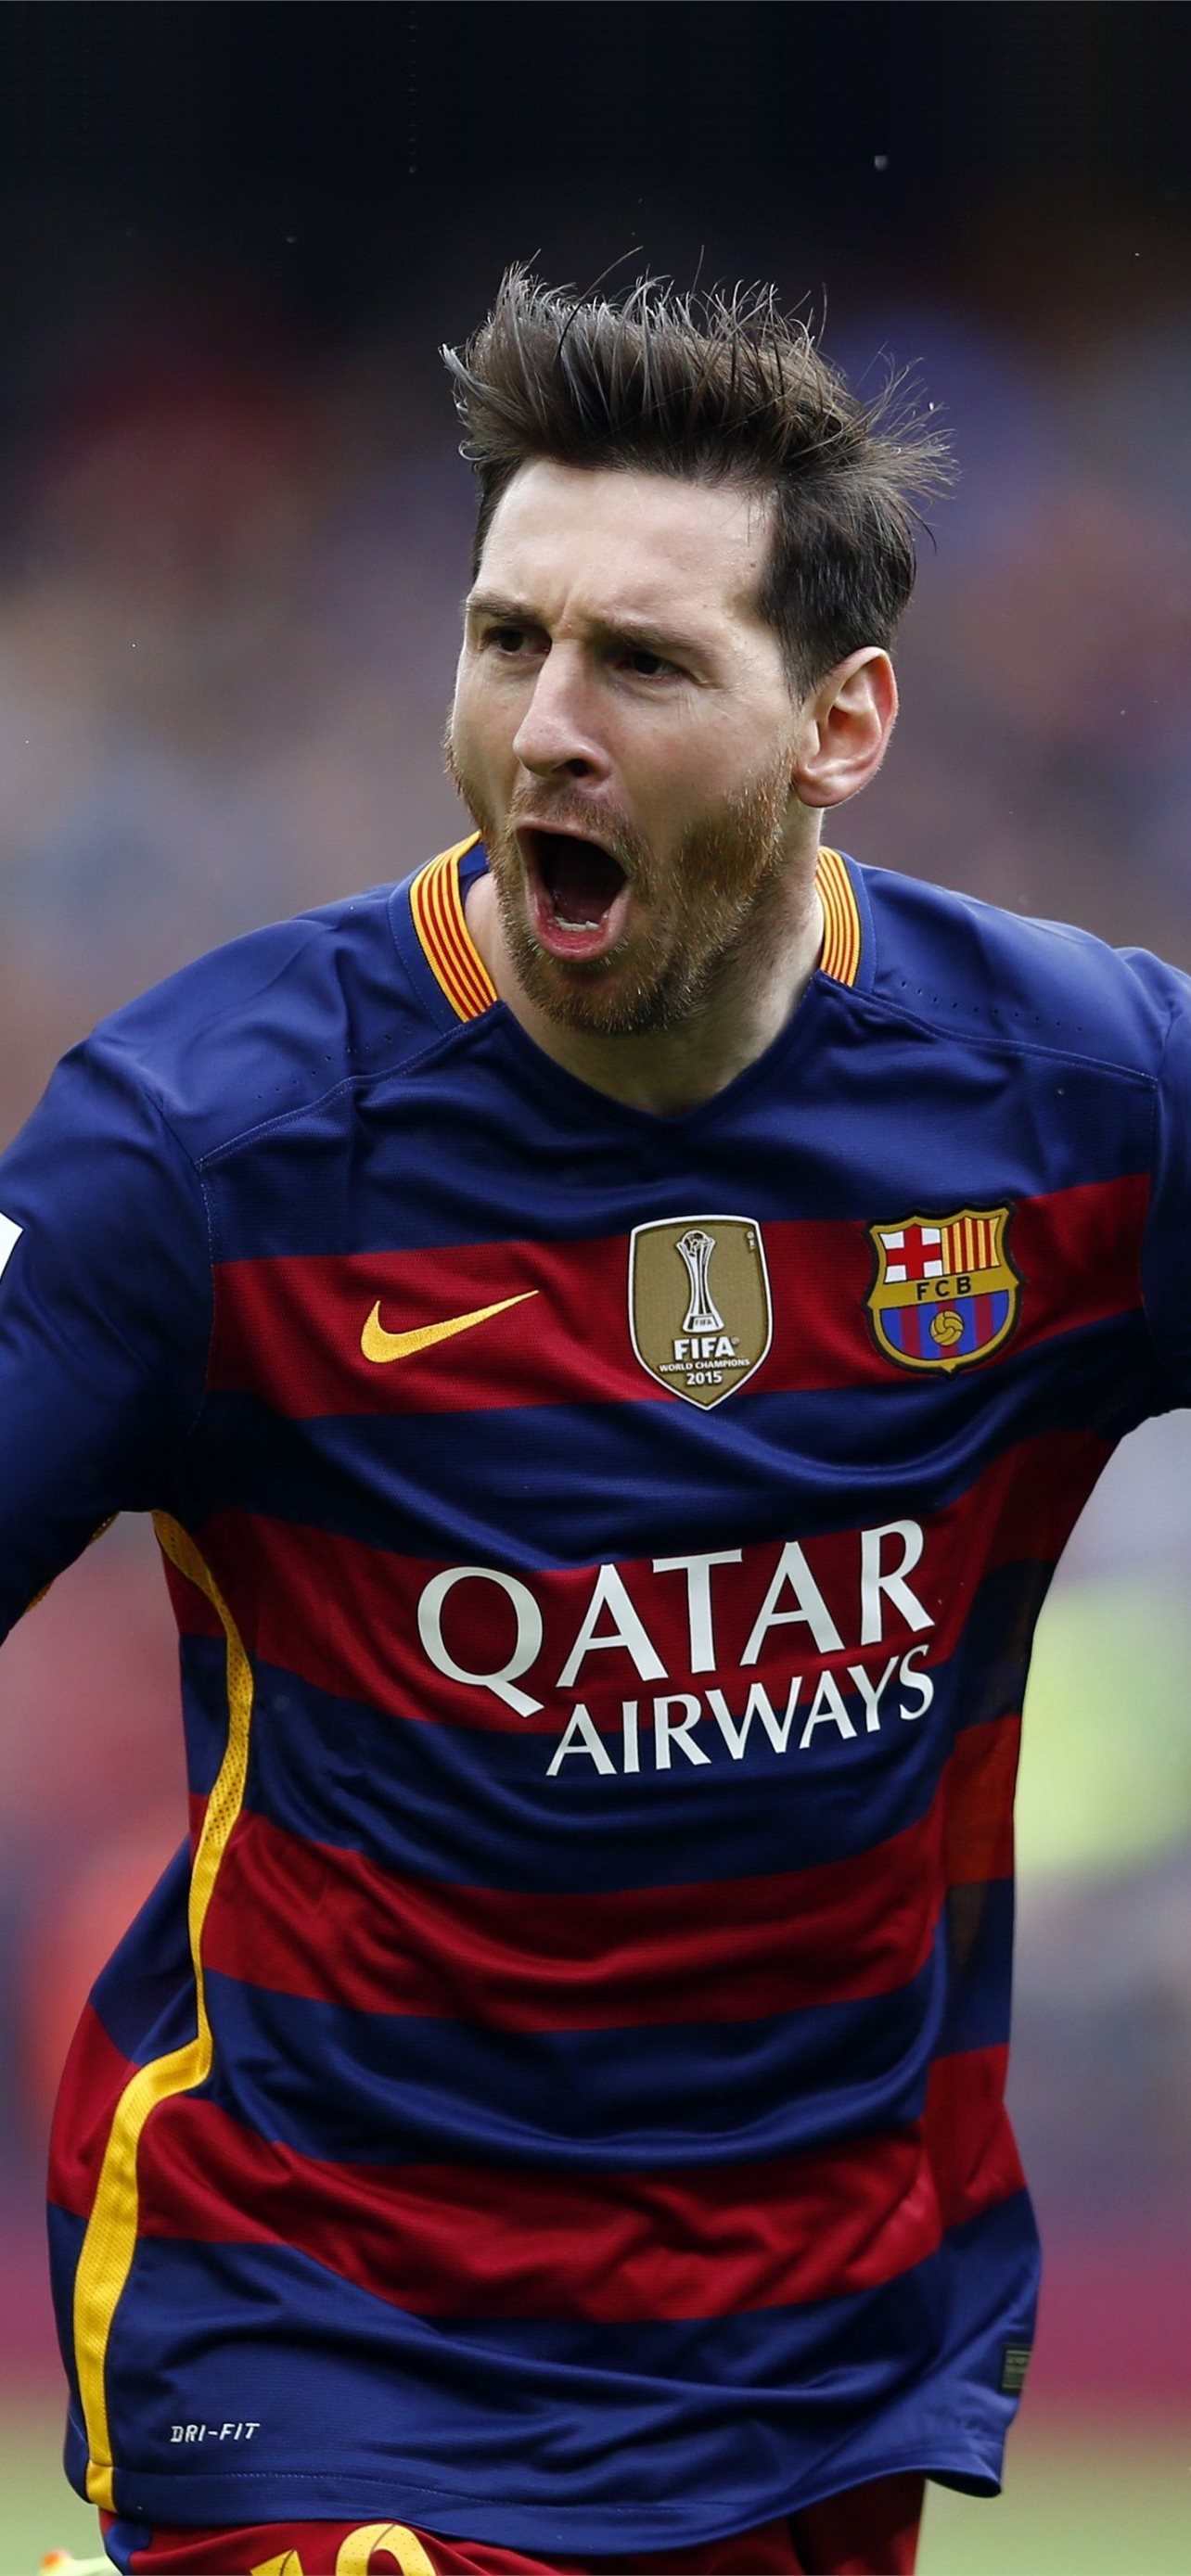 Messi HD: Chất lượng hình ảnh là quan trọng và với Messi HD, bạn có thể tận hưởng những hình ảnh chân thực và rõ nét nhất của Messi trên sân cỏ.